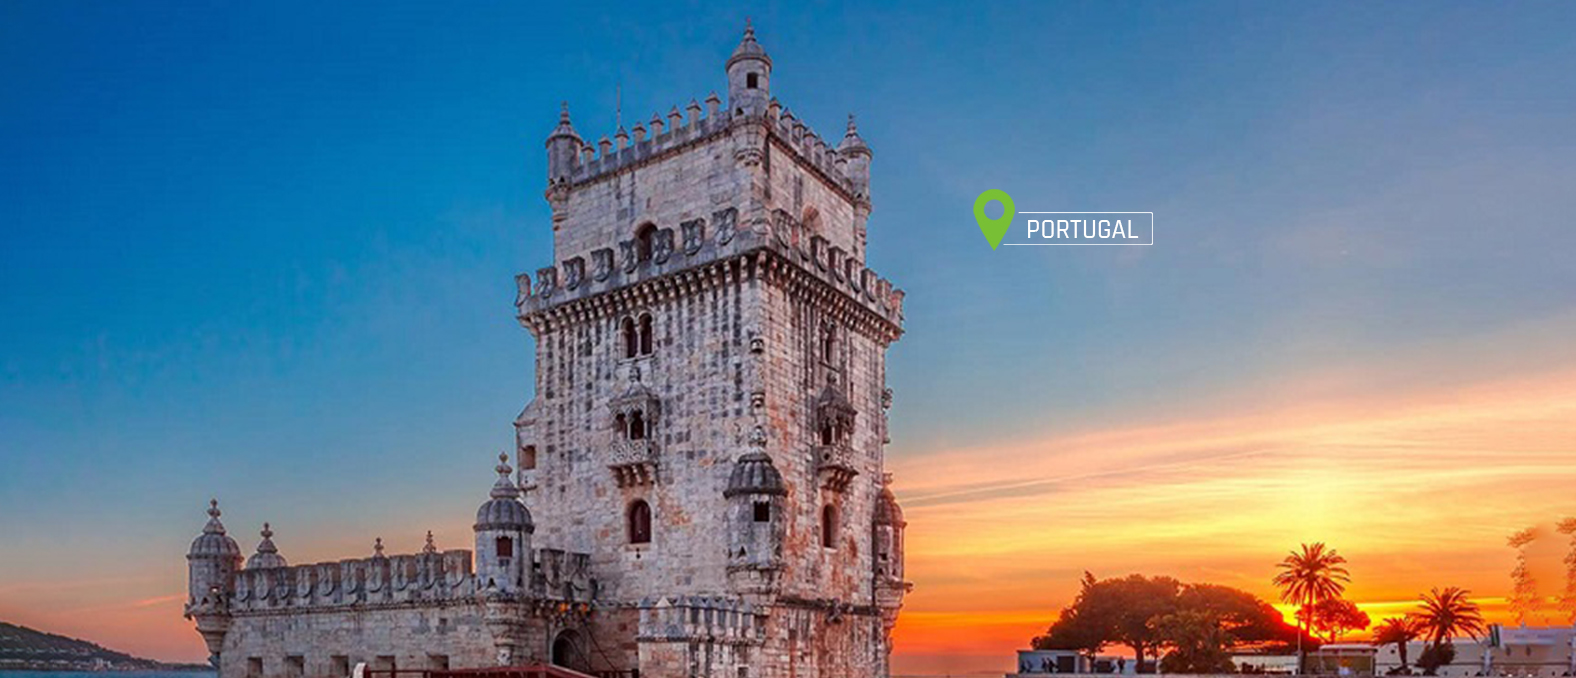 Portugal-slide-desktop